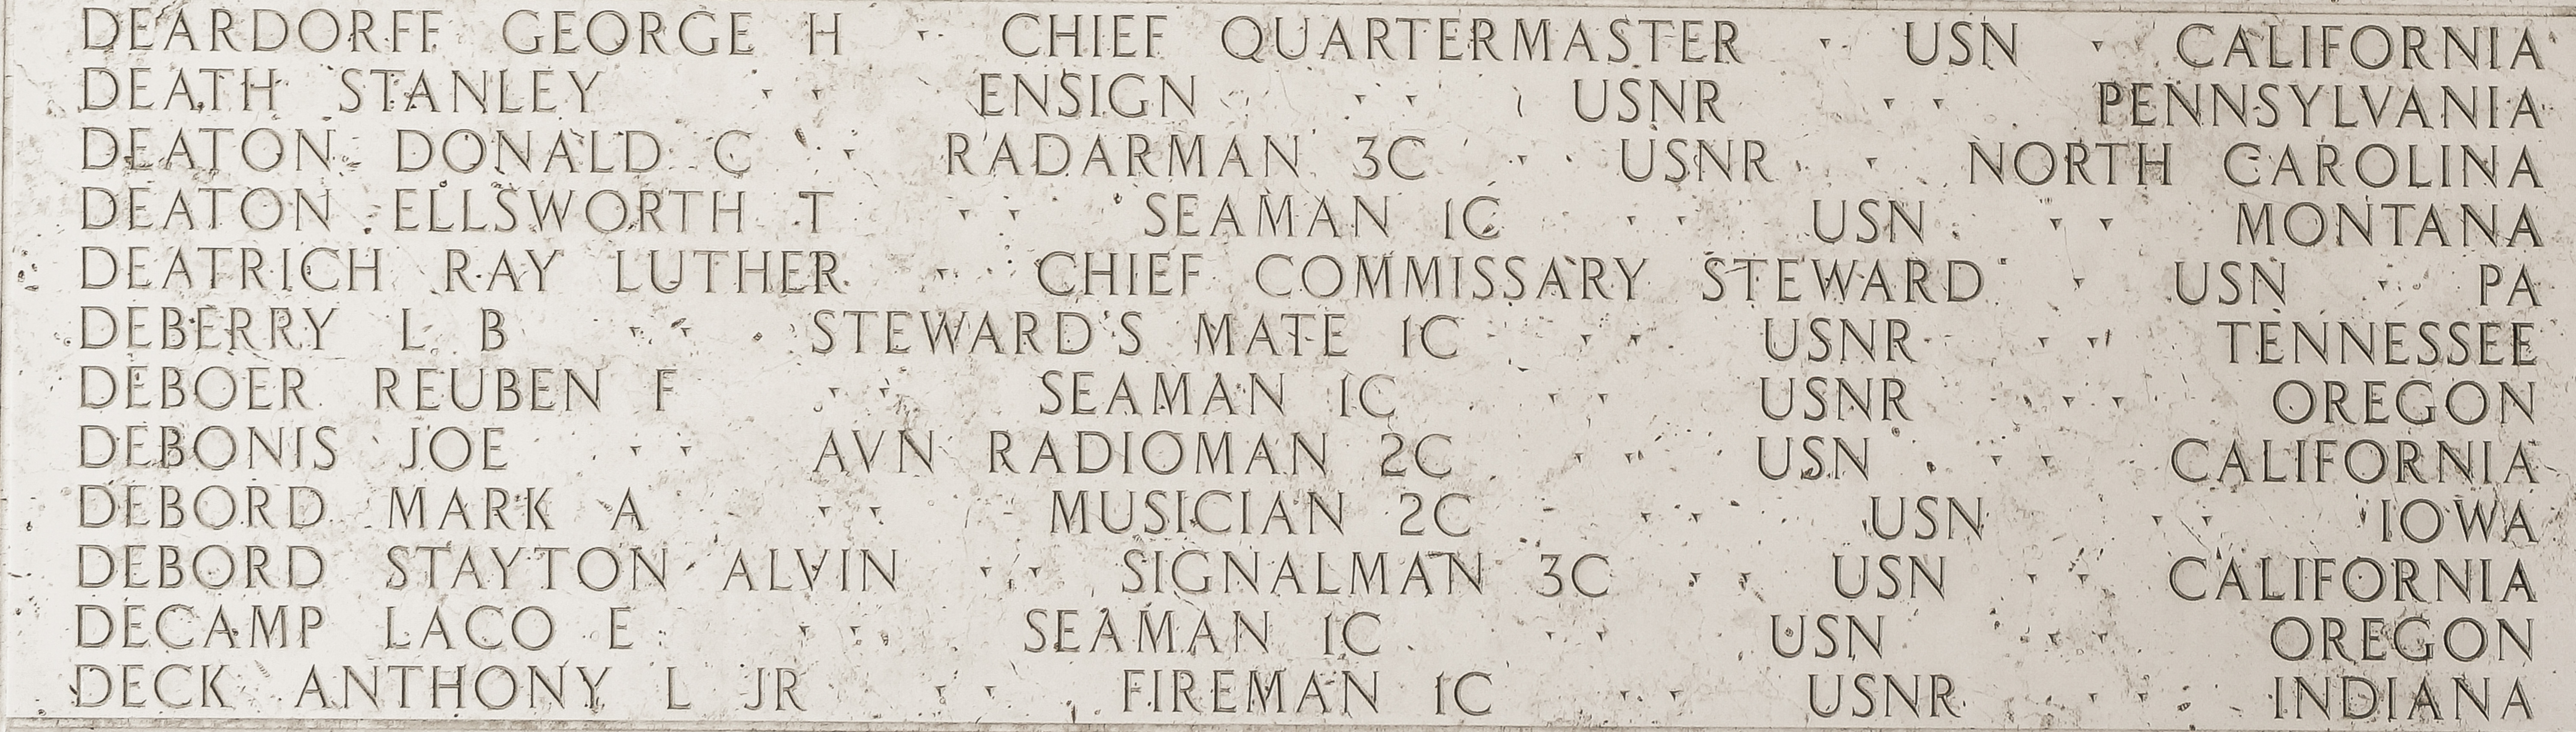 Donald C. Deaton, Radarman Third Class